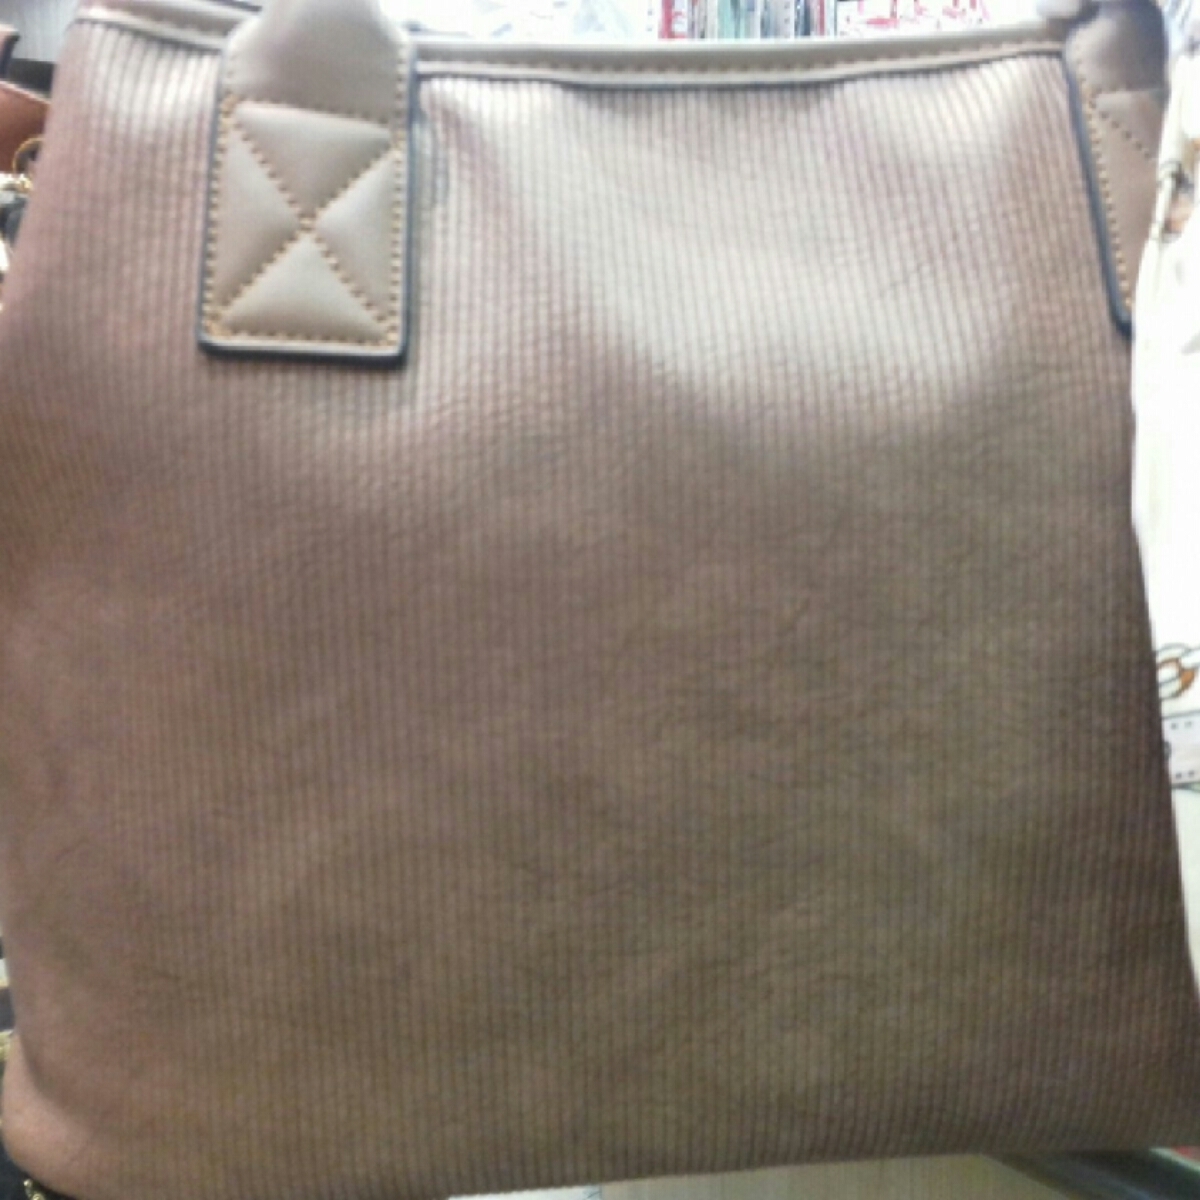 Dark brown colour handbag Ellegence brand for women